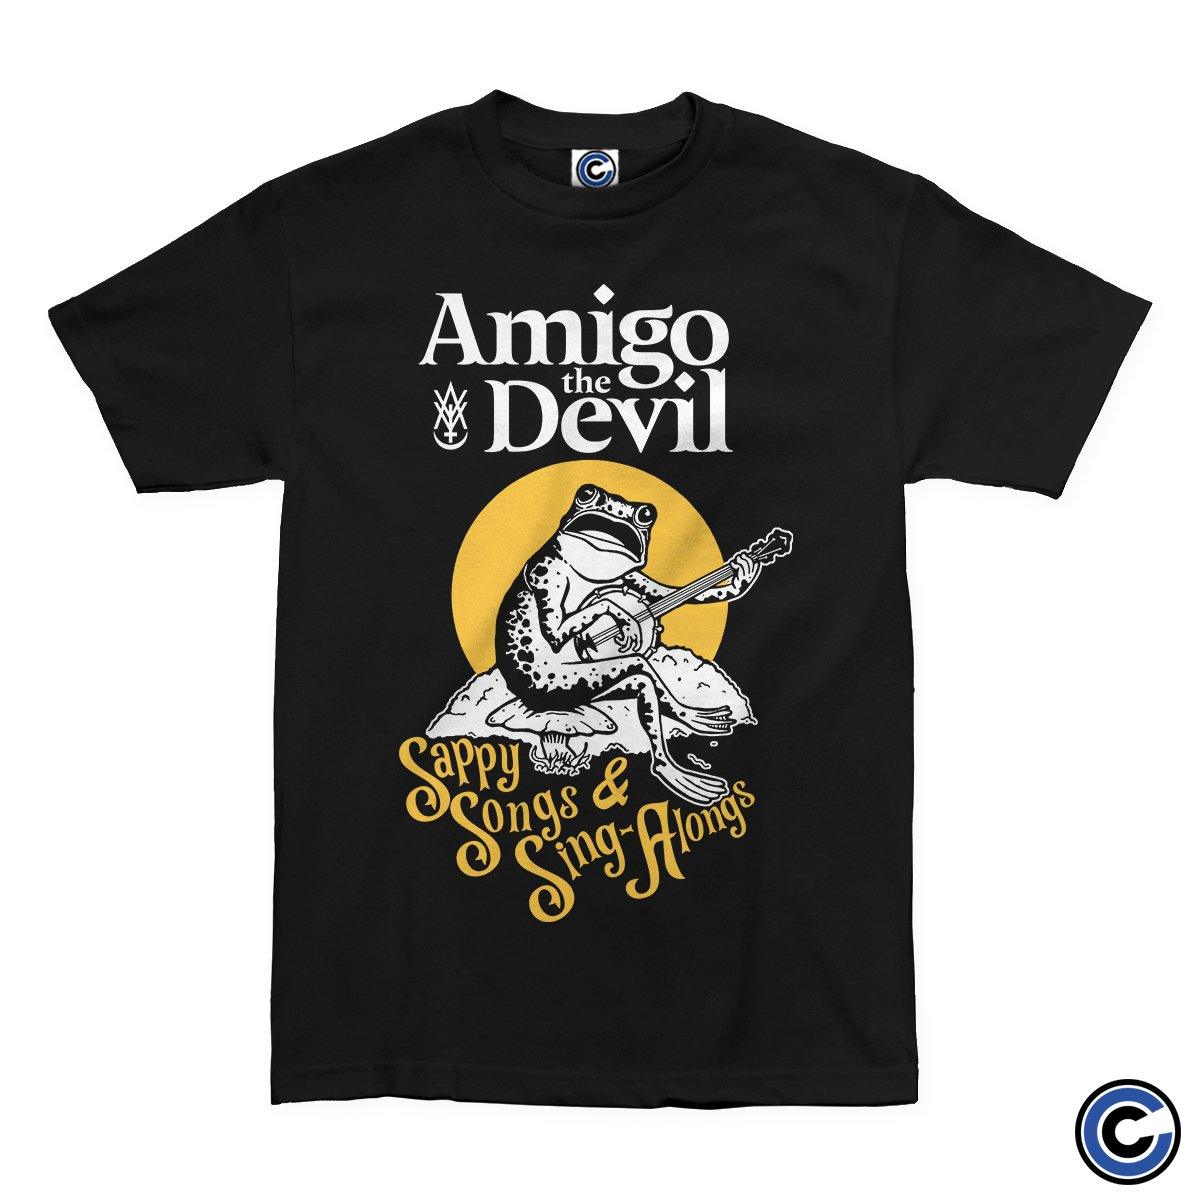 Buy – Amigo The Devil "Sappy Songs" Shirt – Band & Music Merch – Cold Cuts Merch